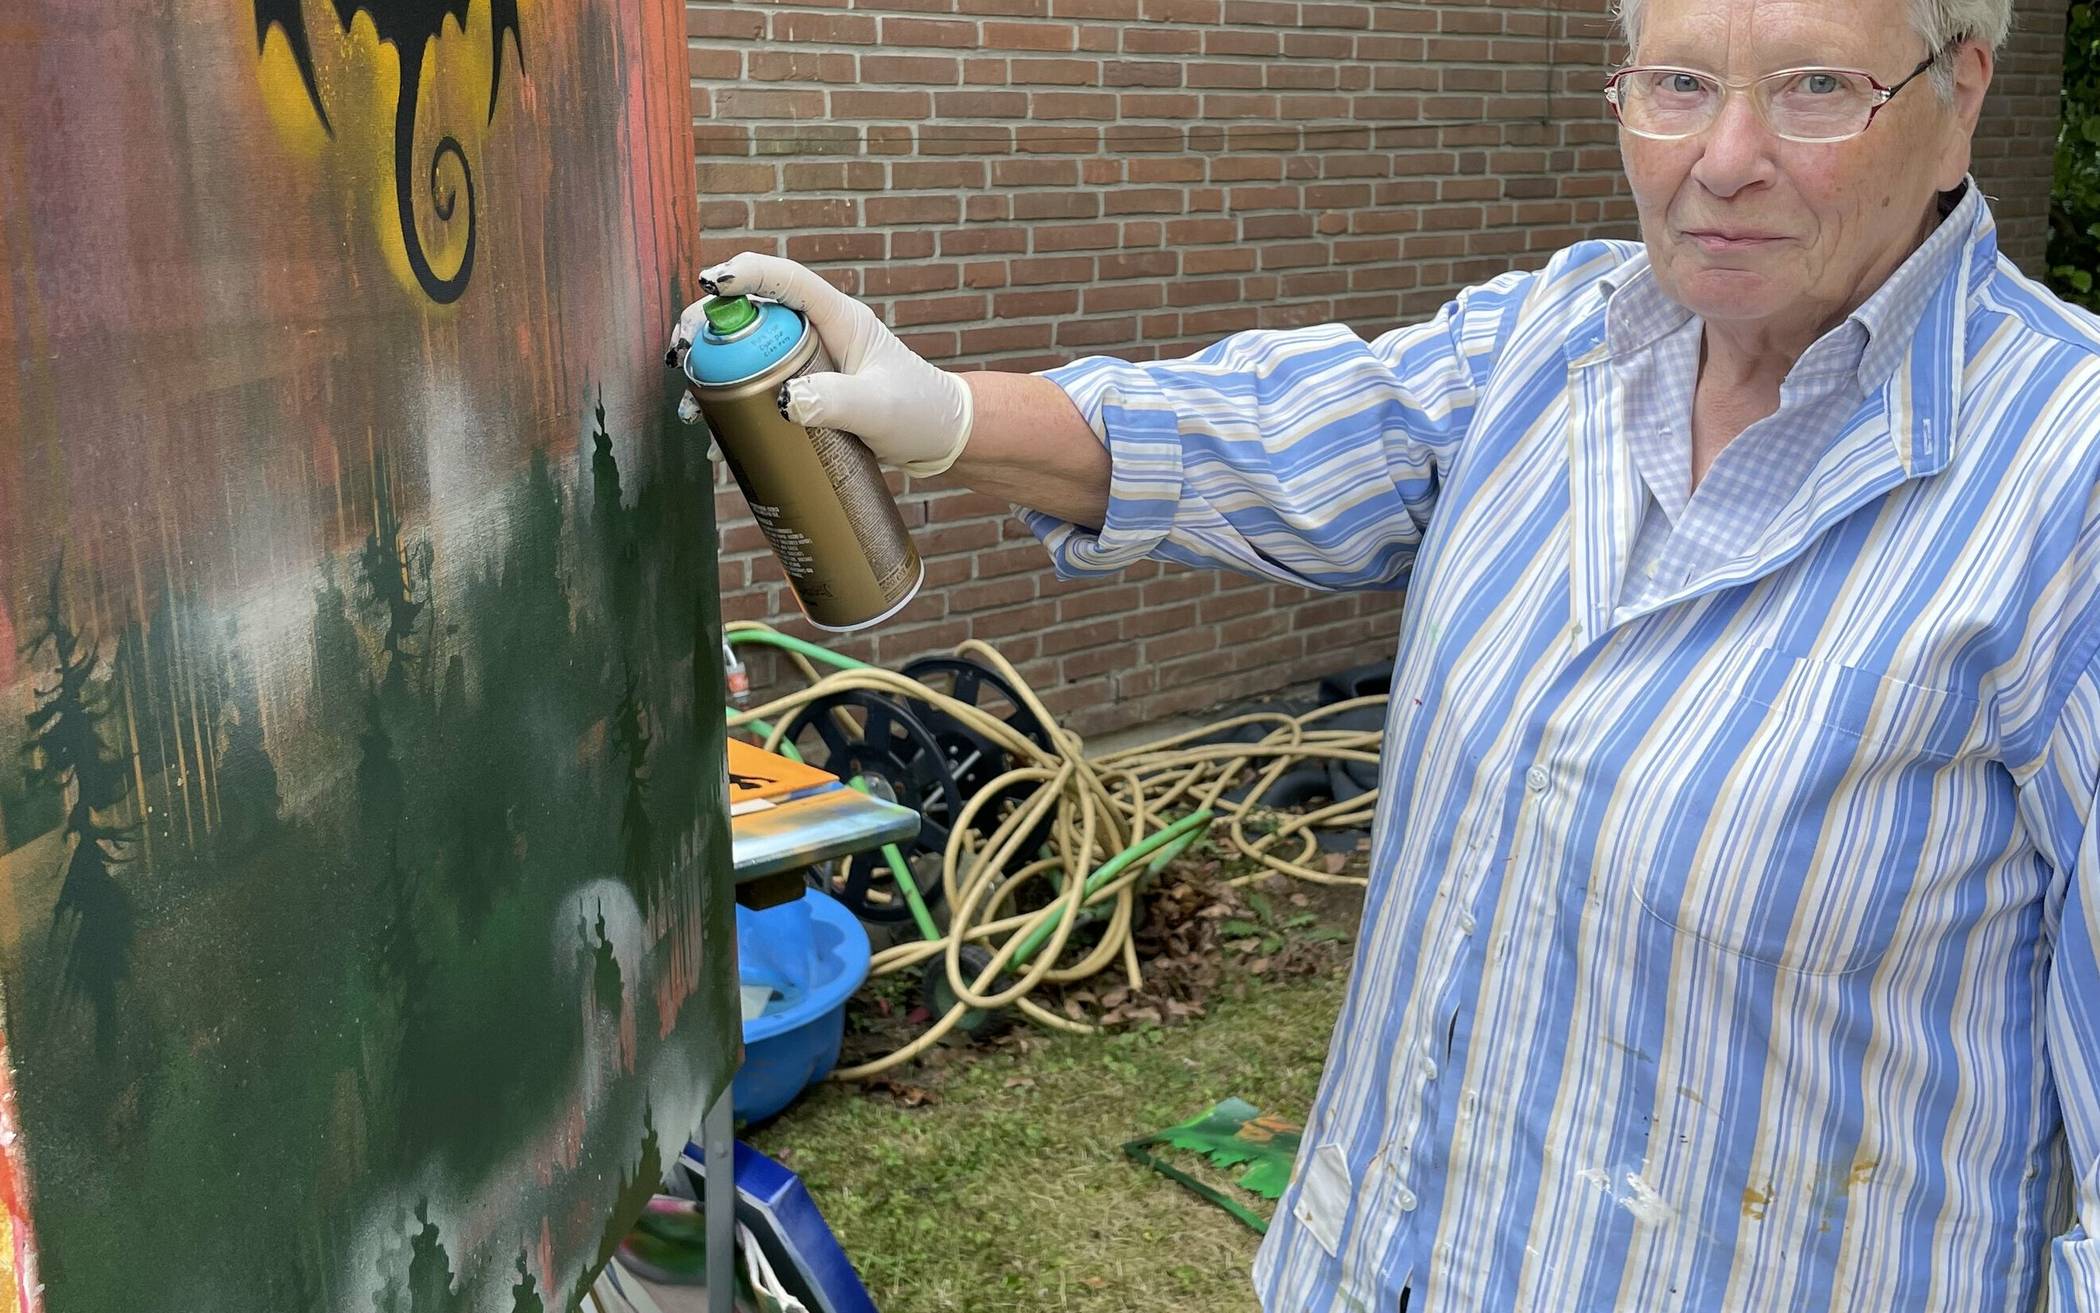  Helga Hess hat das Graffiti-Sprayen für sich entdeckt. Unwohl hat sie sich als Älteste im Workshop nicht gefühlt. 